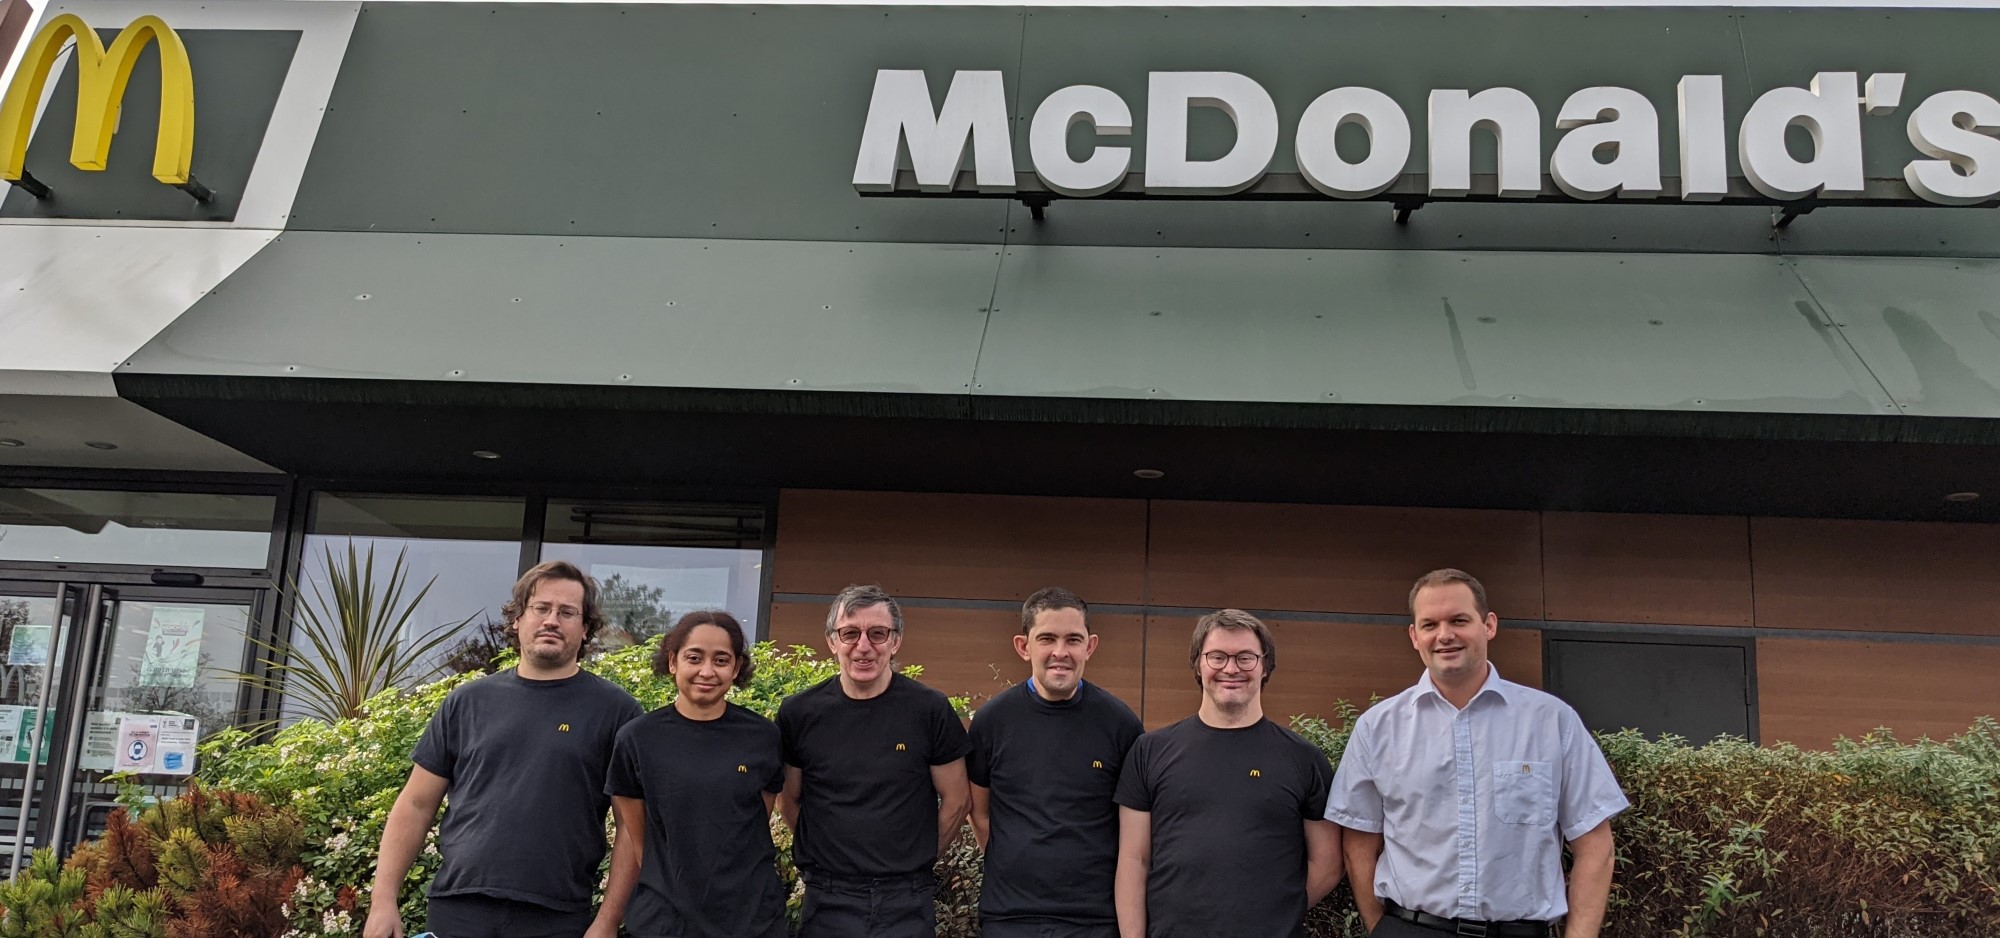 Les McDonald’s du Bassin d’Arcachon et l’Adapei de la Gironde, un partenariat gagnant – gagnant